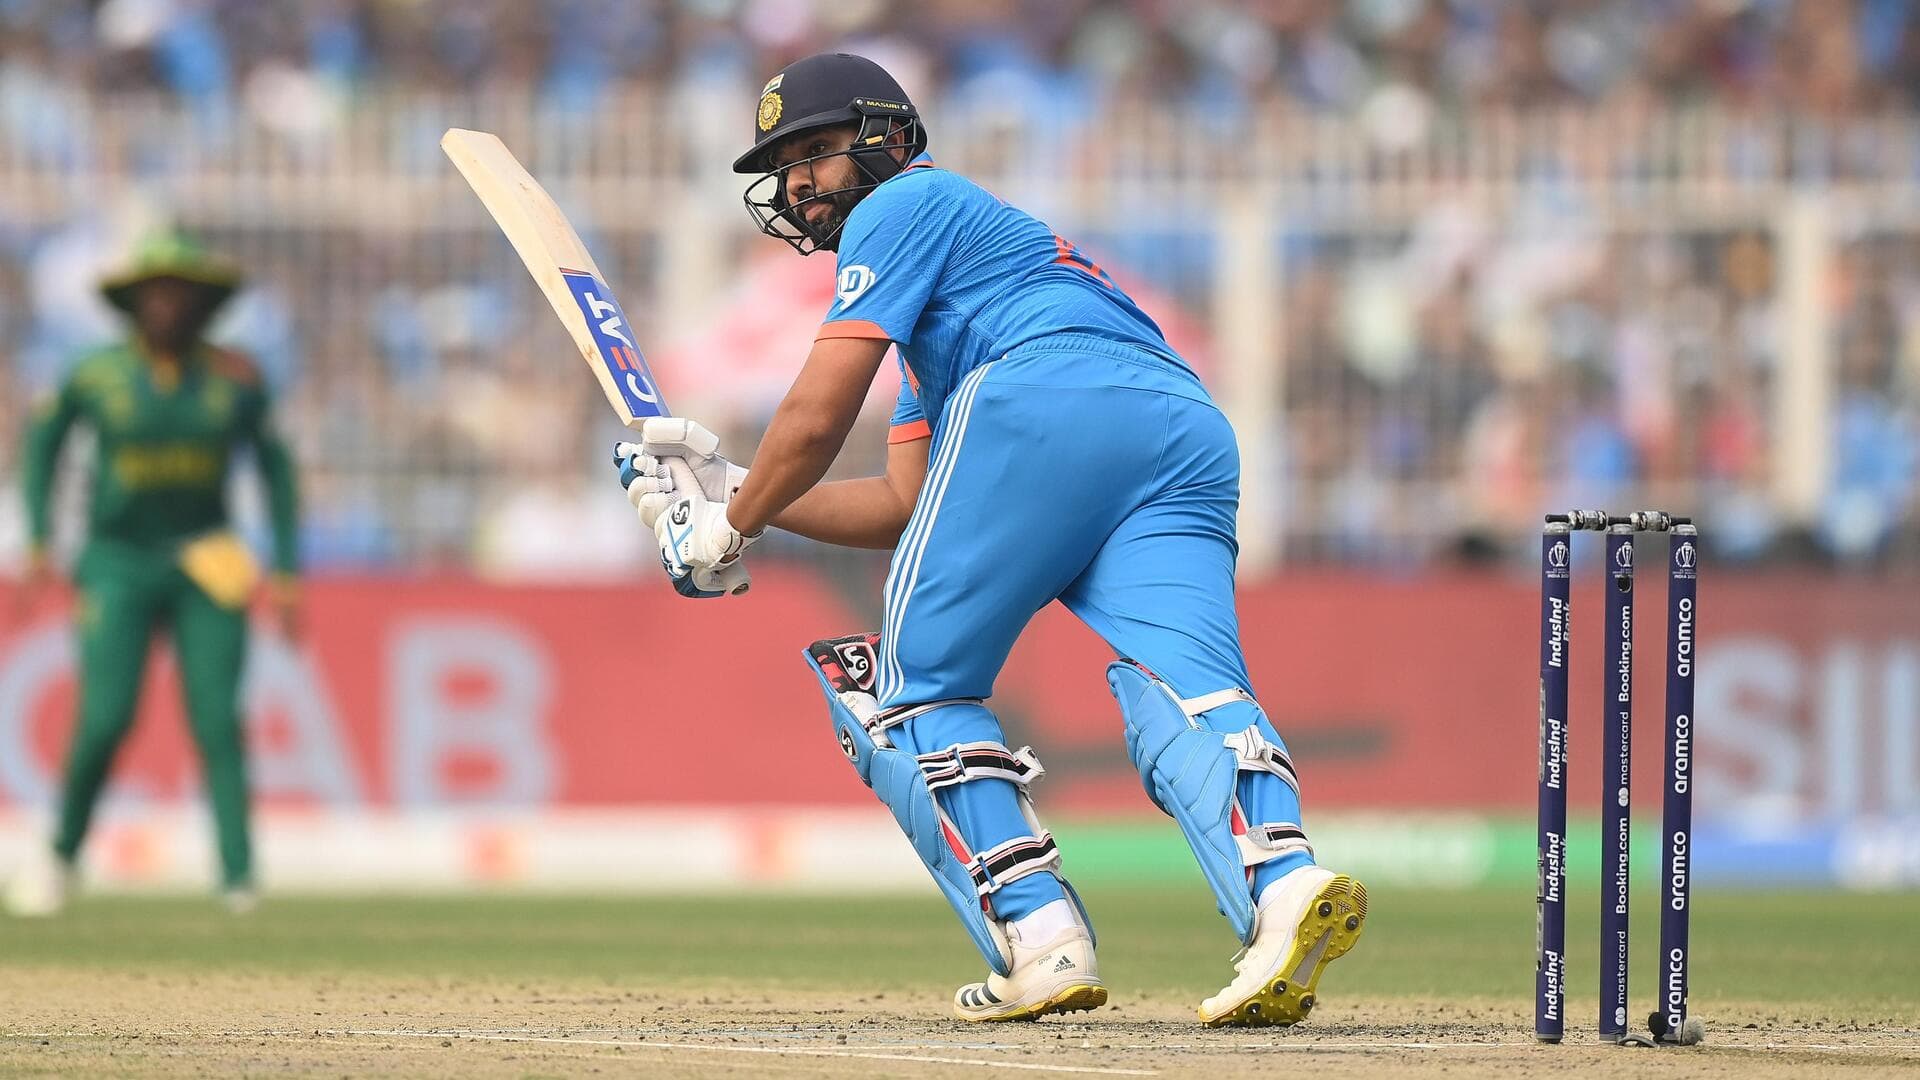 रोहित शर्मा लगातार 2 विश्व कप संस्करणों में 500+ रन बनाने वाले पहले खिलाड़ी बने